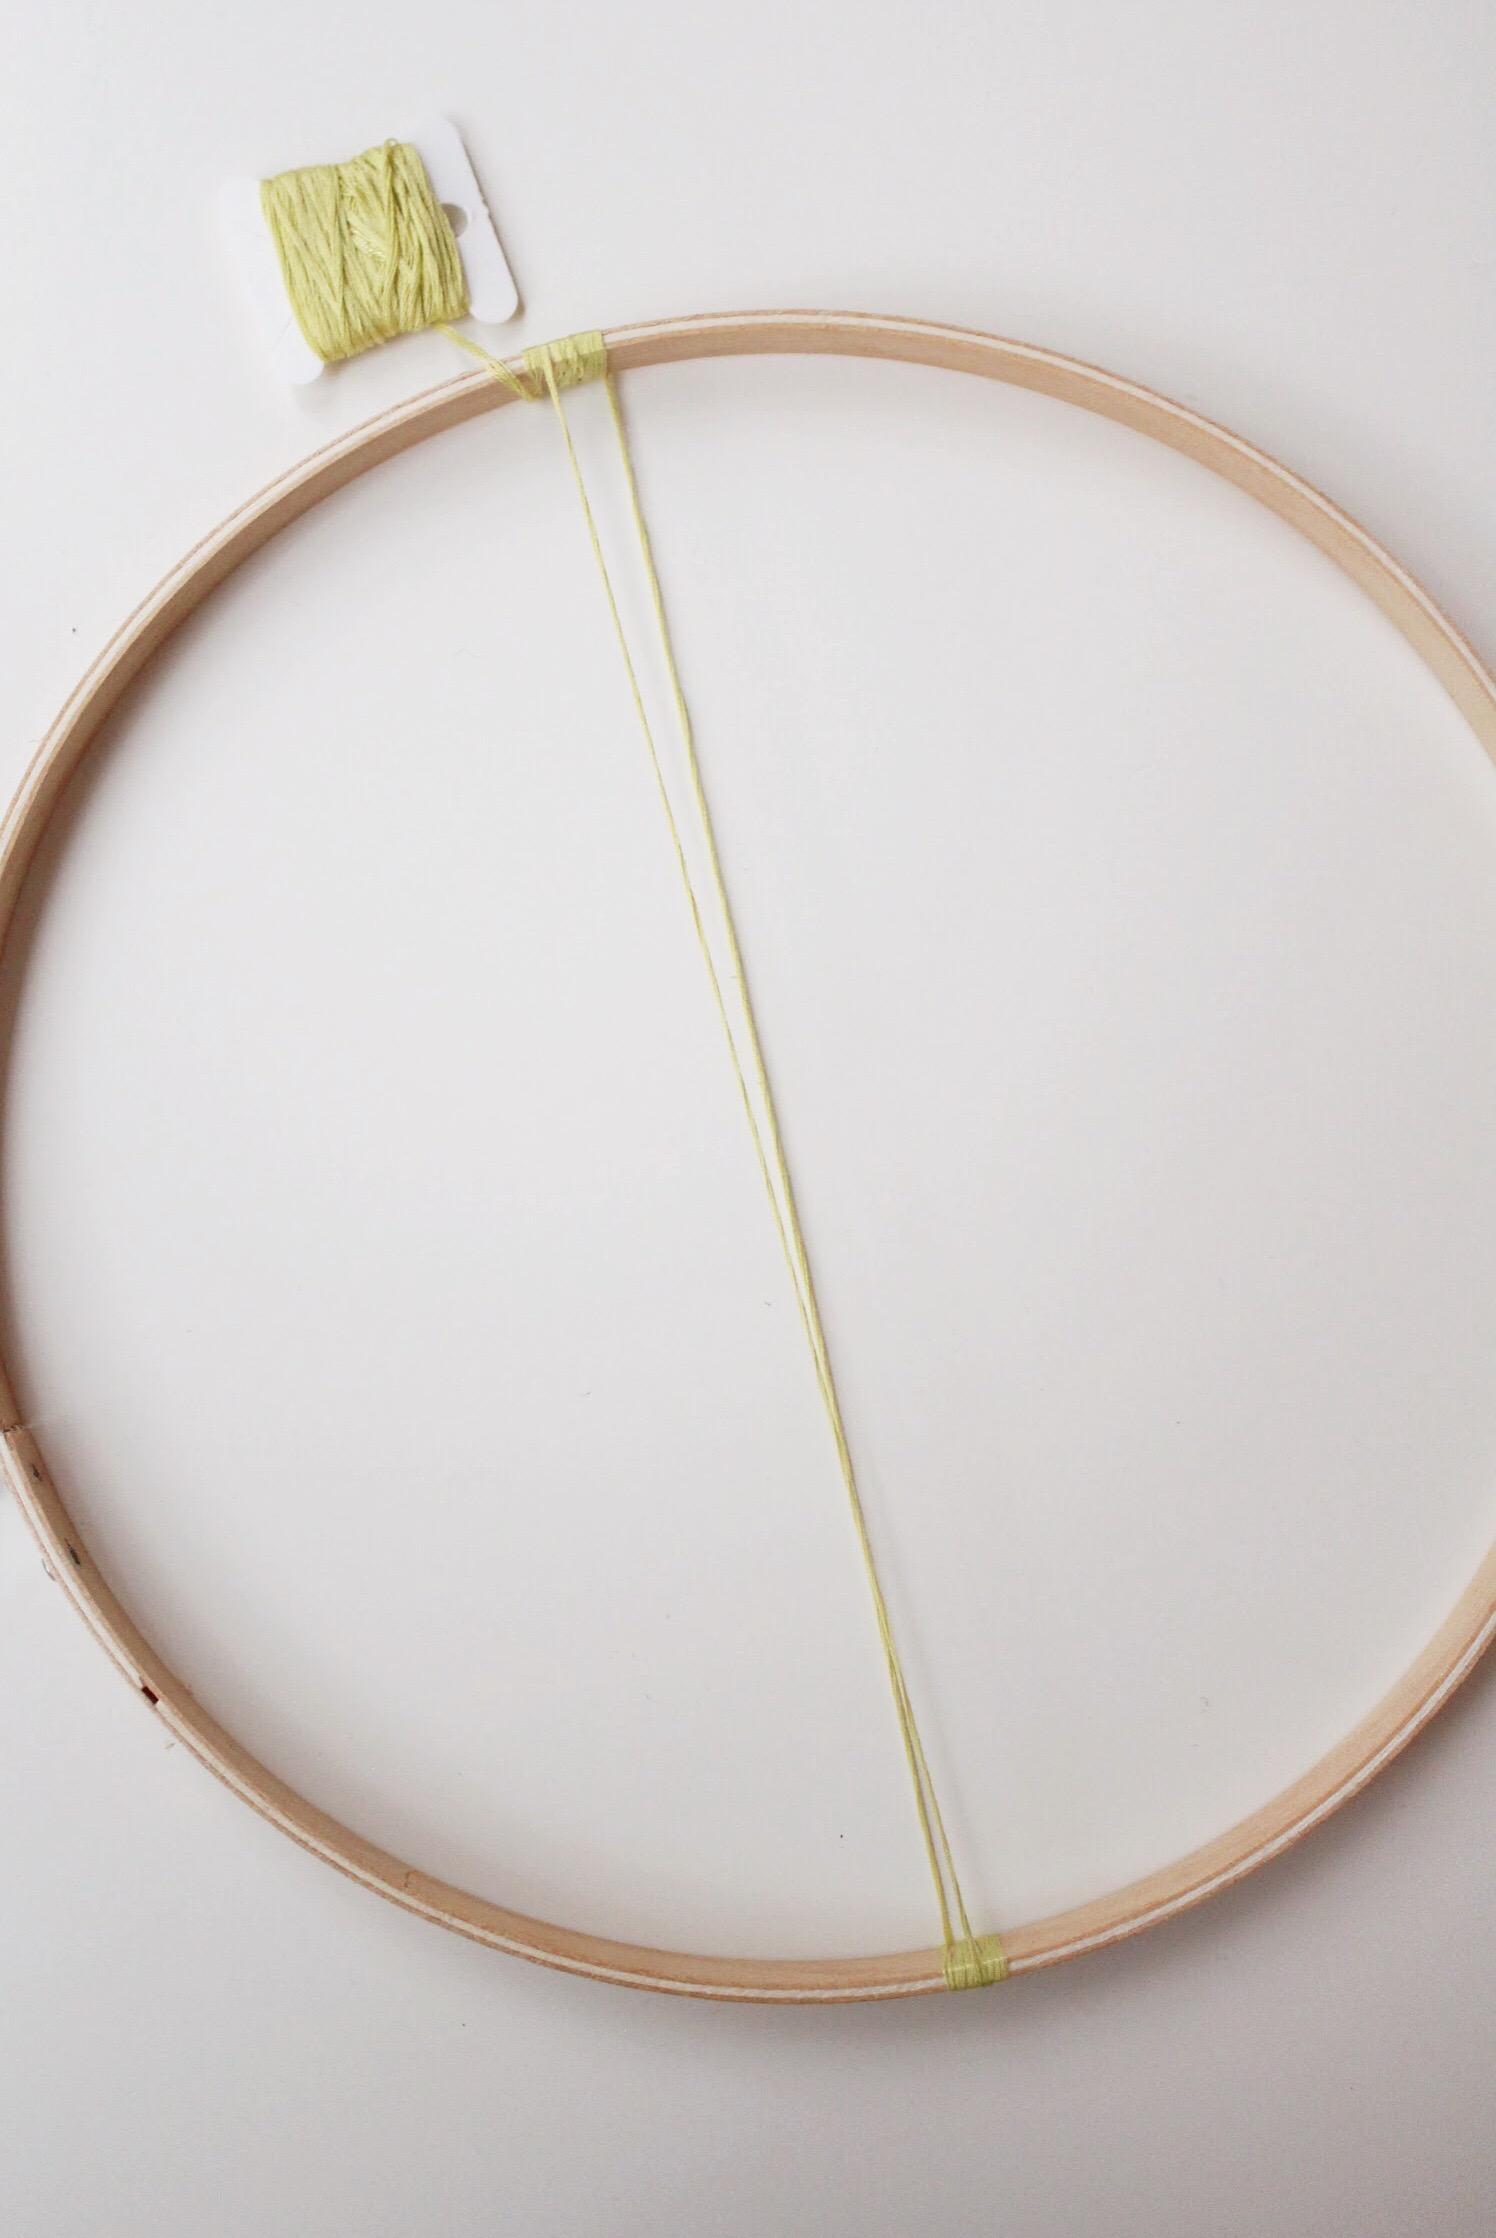 DIY Embroidery hoop Baby Mobile